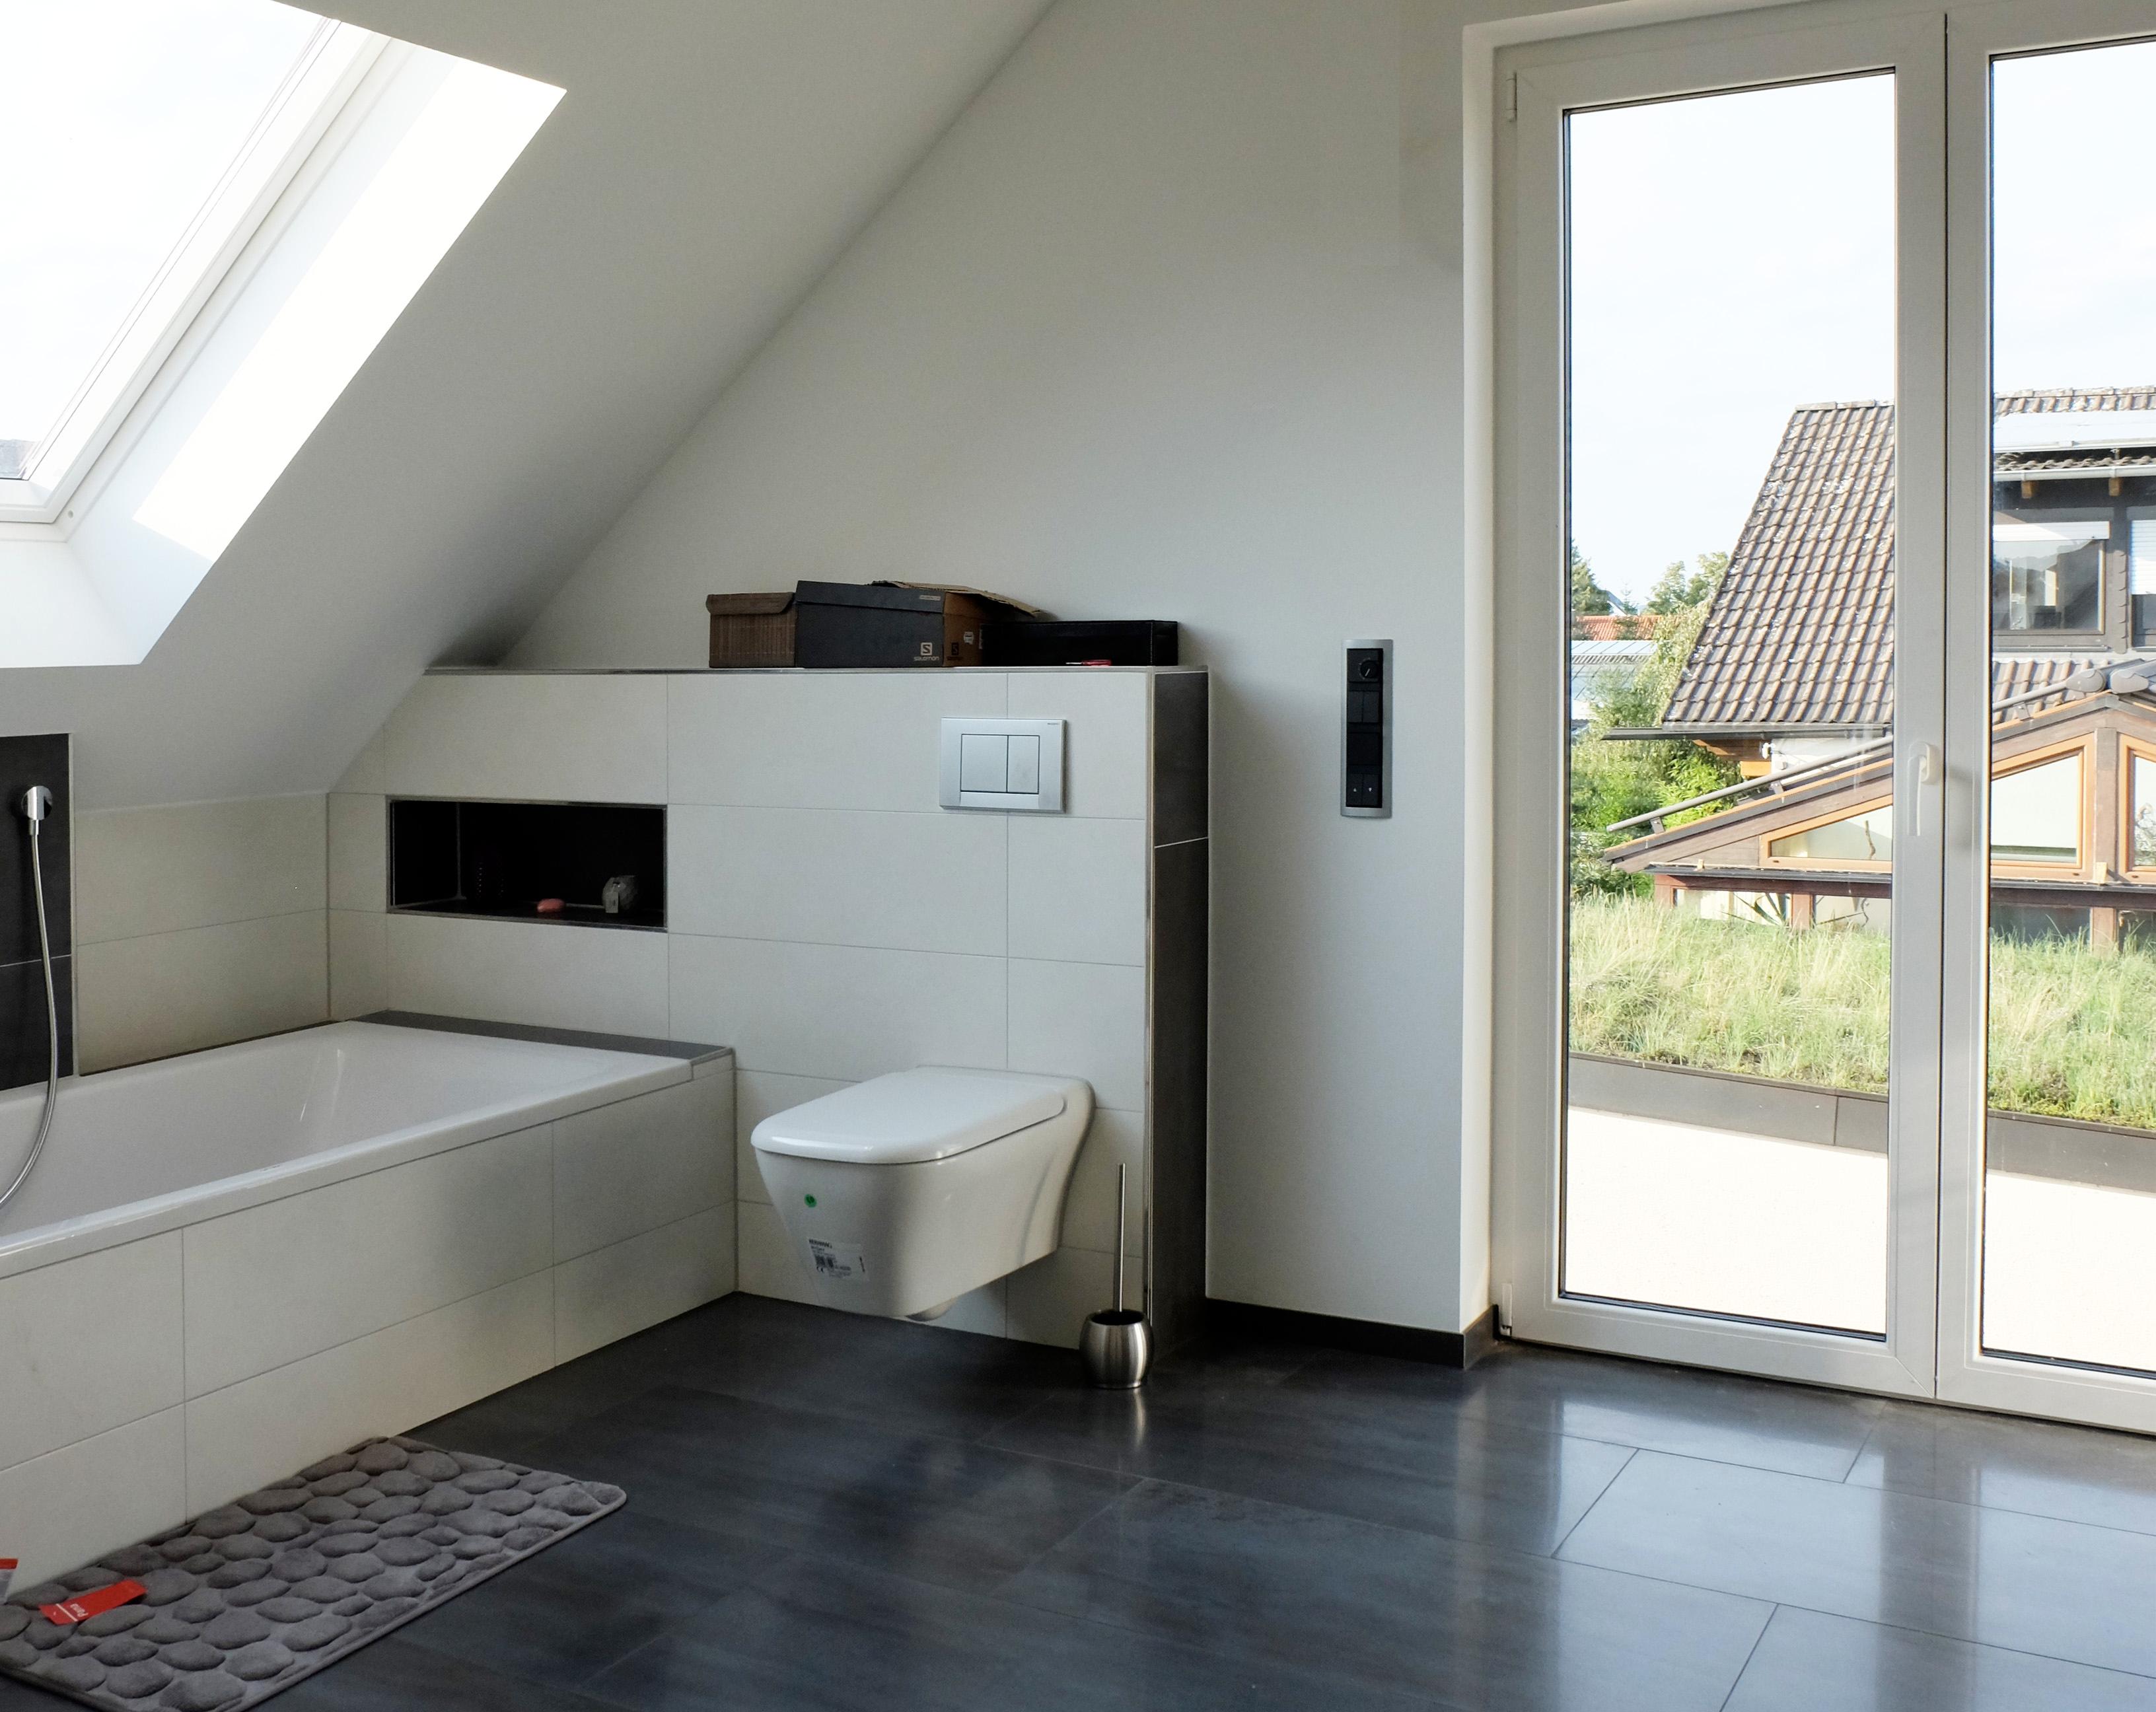 Helles Badezimmer mit Austritt #architektenhaus #badezimmer ©Resonatorcoop